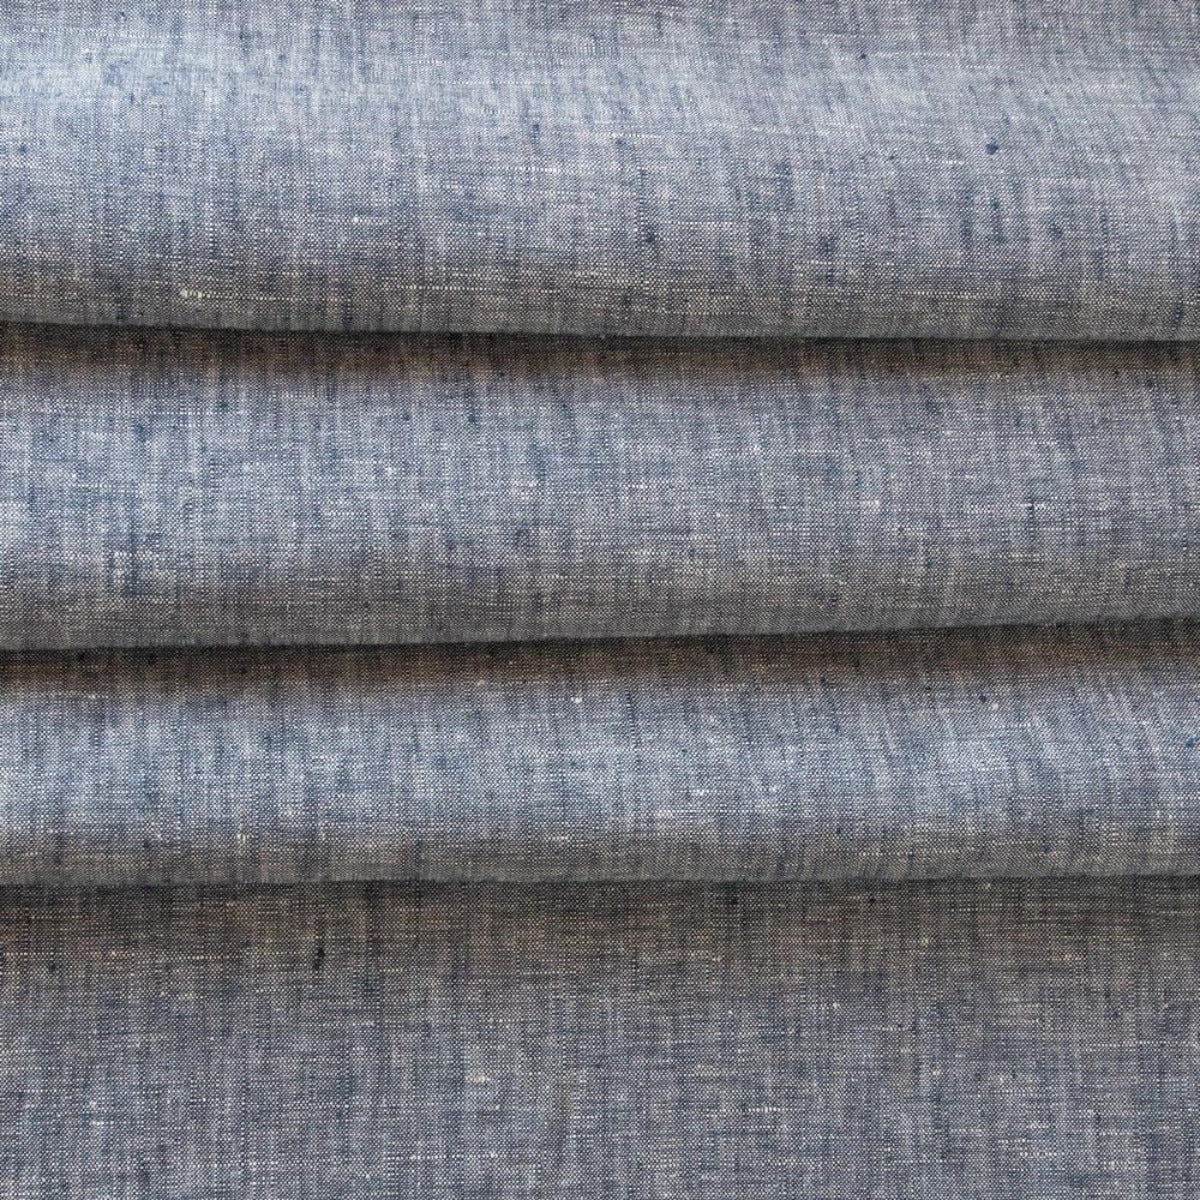 Normandy denim blue lightweight linen fabric from Tonic Living